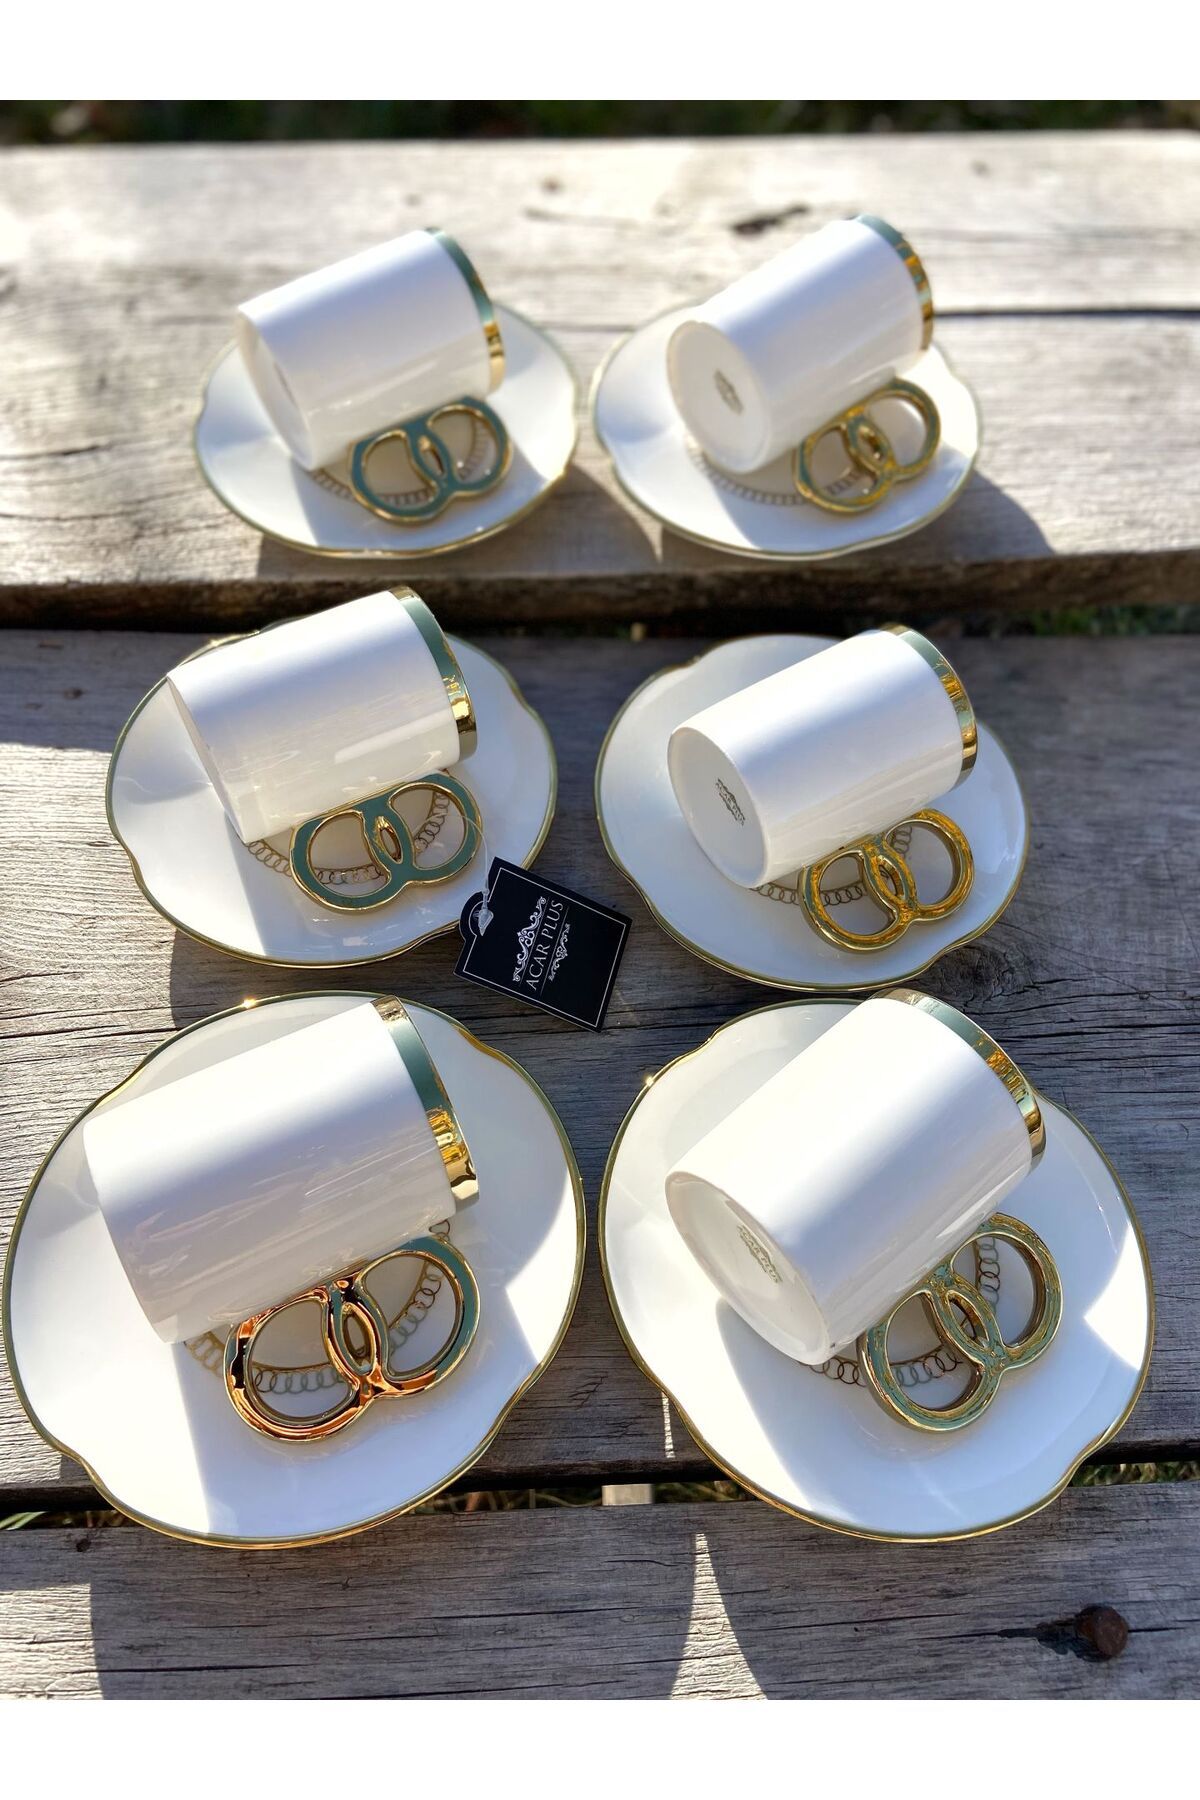 Evimin Eşyası Acar İnfinity Beyaz Renk 6 Kişilik Porselen Türk Kahvesi Fincan Seti